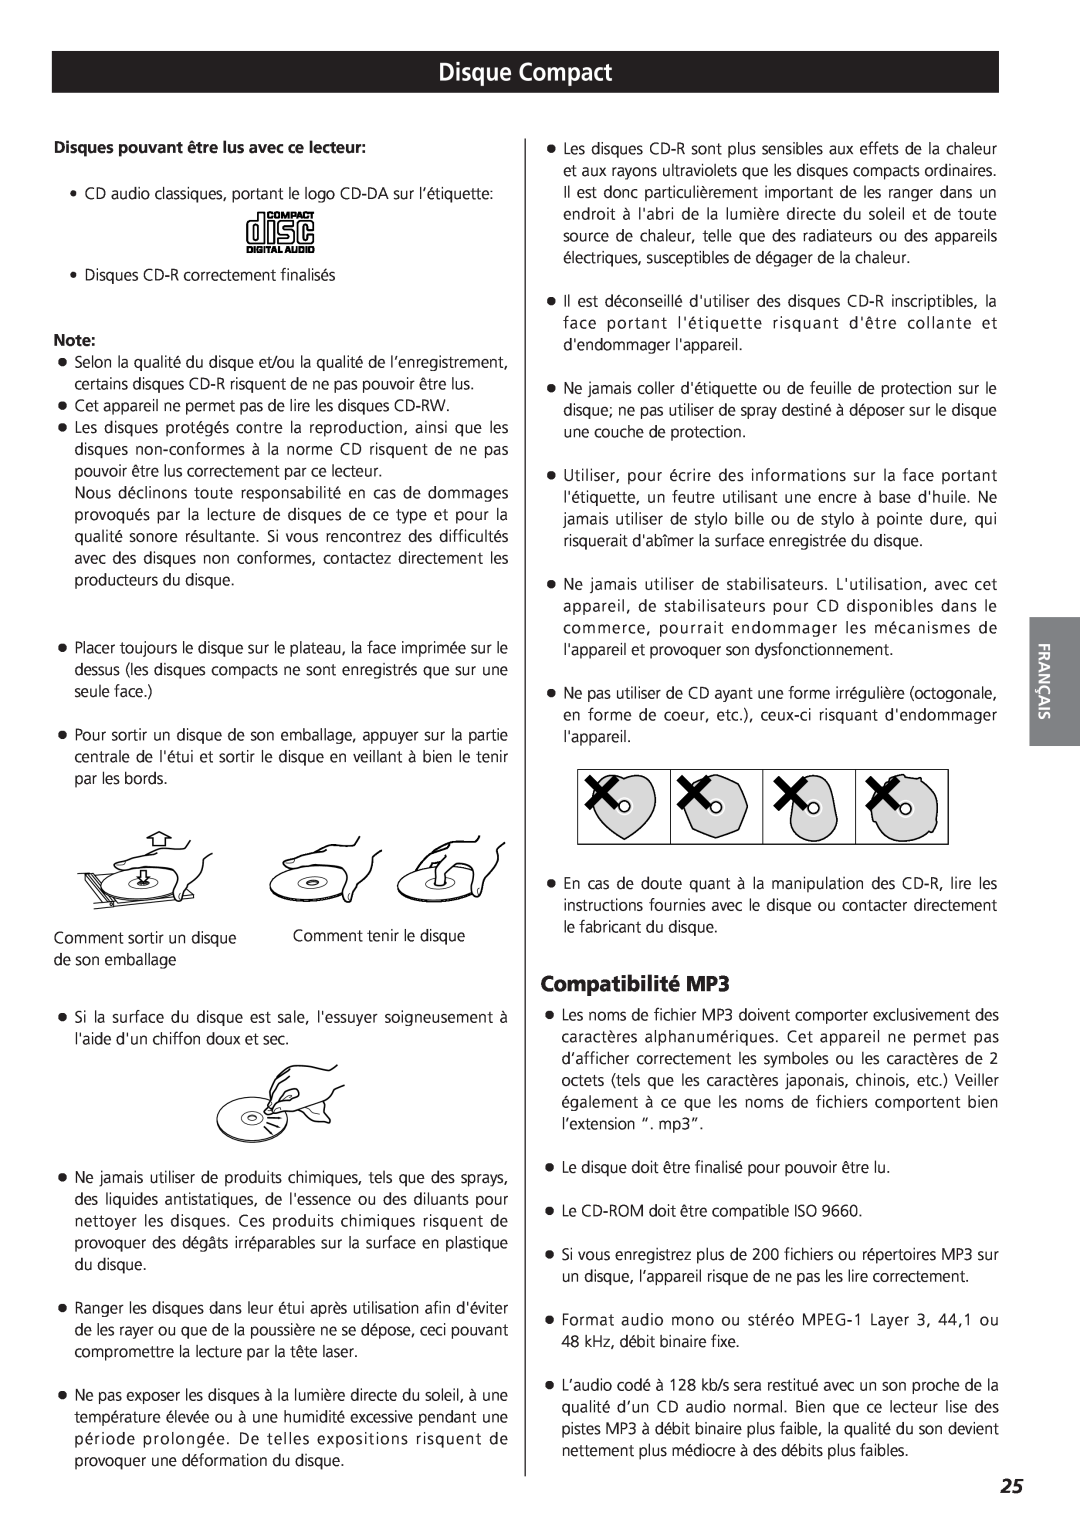 Teac MC-DX20 owner manual Disque Compact, Compatibilité MP3, Français 